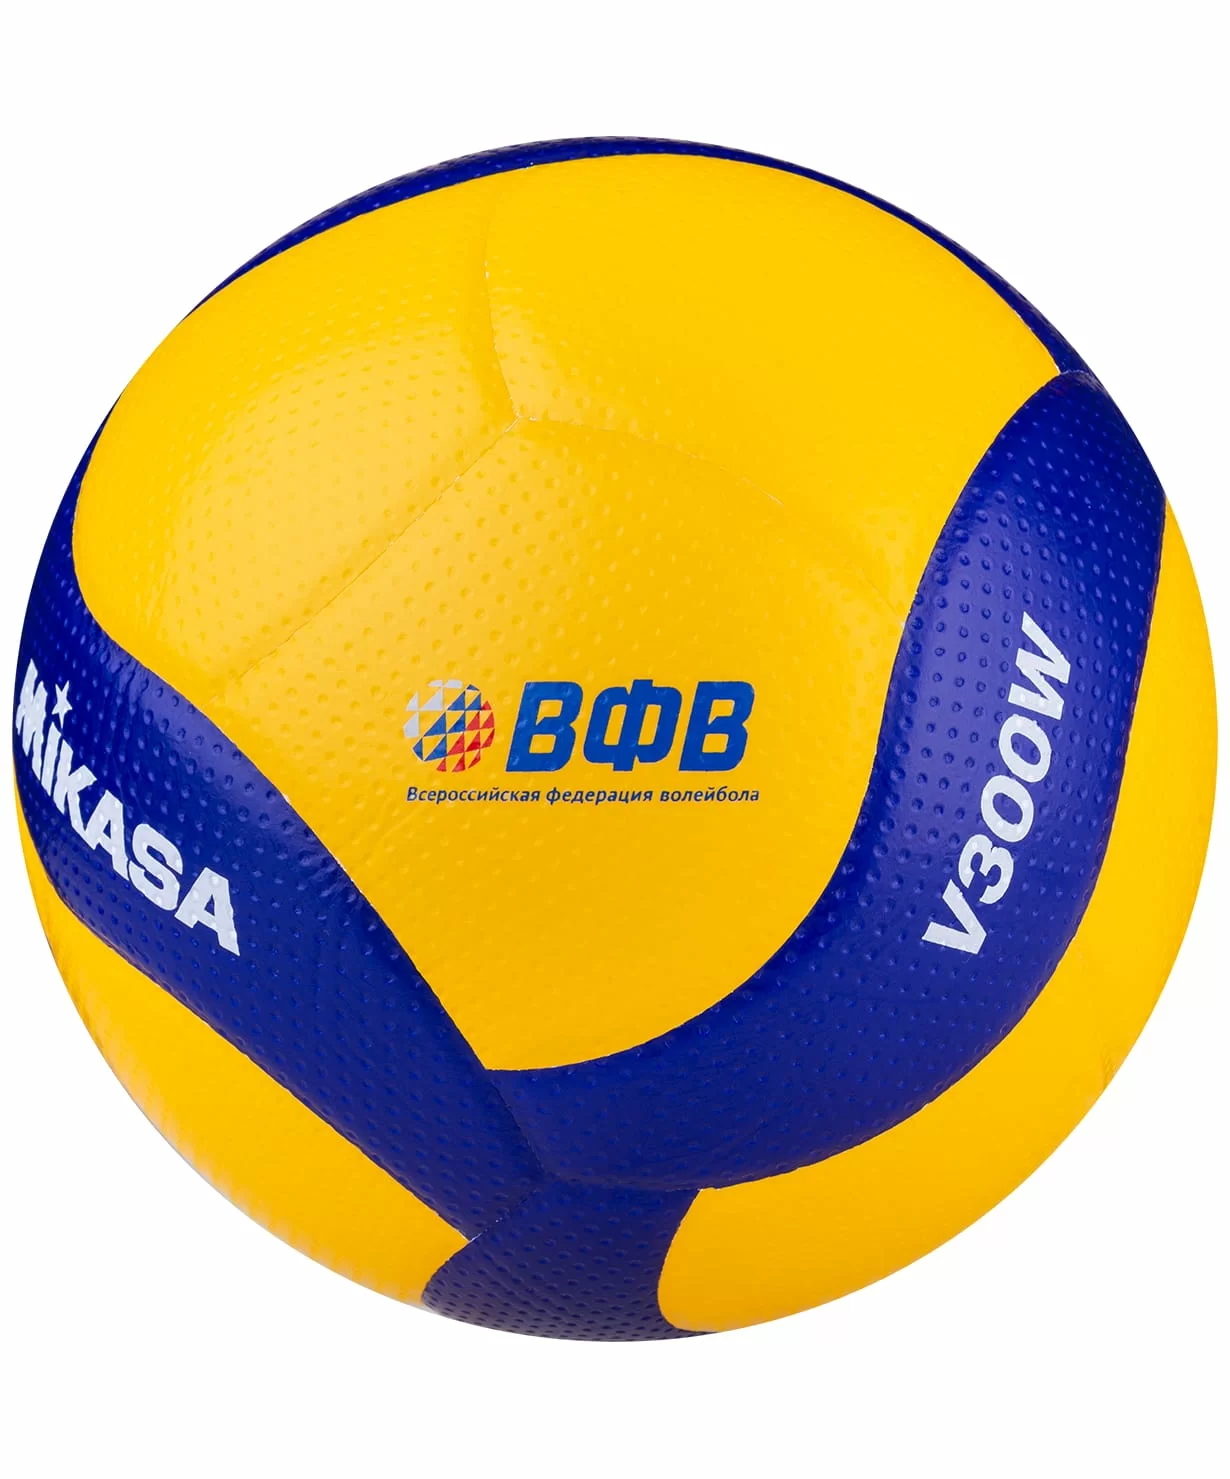 Реальное фото Мяч волейбольный Mikasa V300W р.5 FIVB Approved желто-синий от магазина СпортЕВ